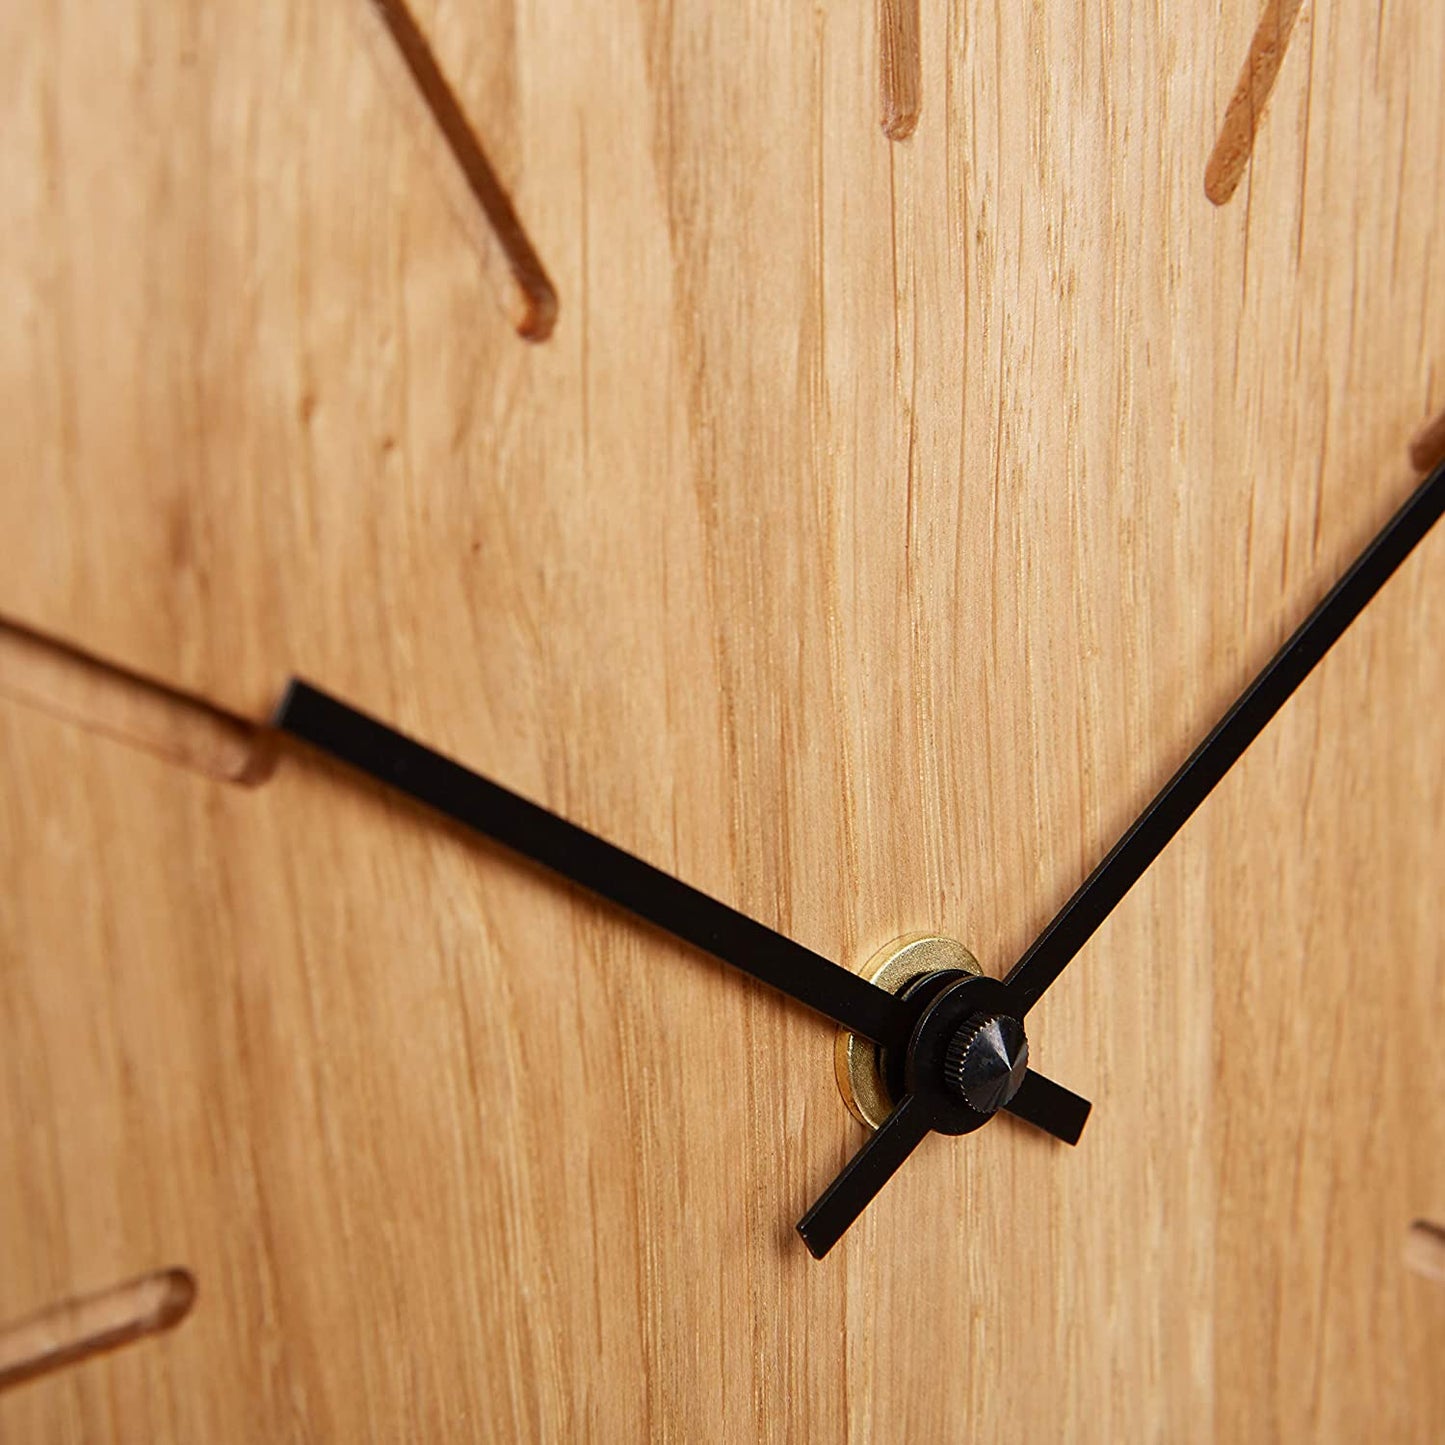 Horloge de Table / Murale Carrée Bois-Atelier Au Bois Zen